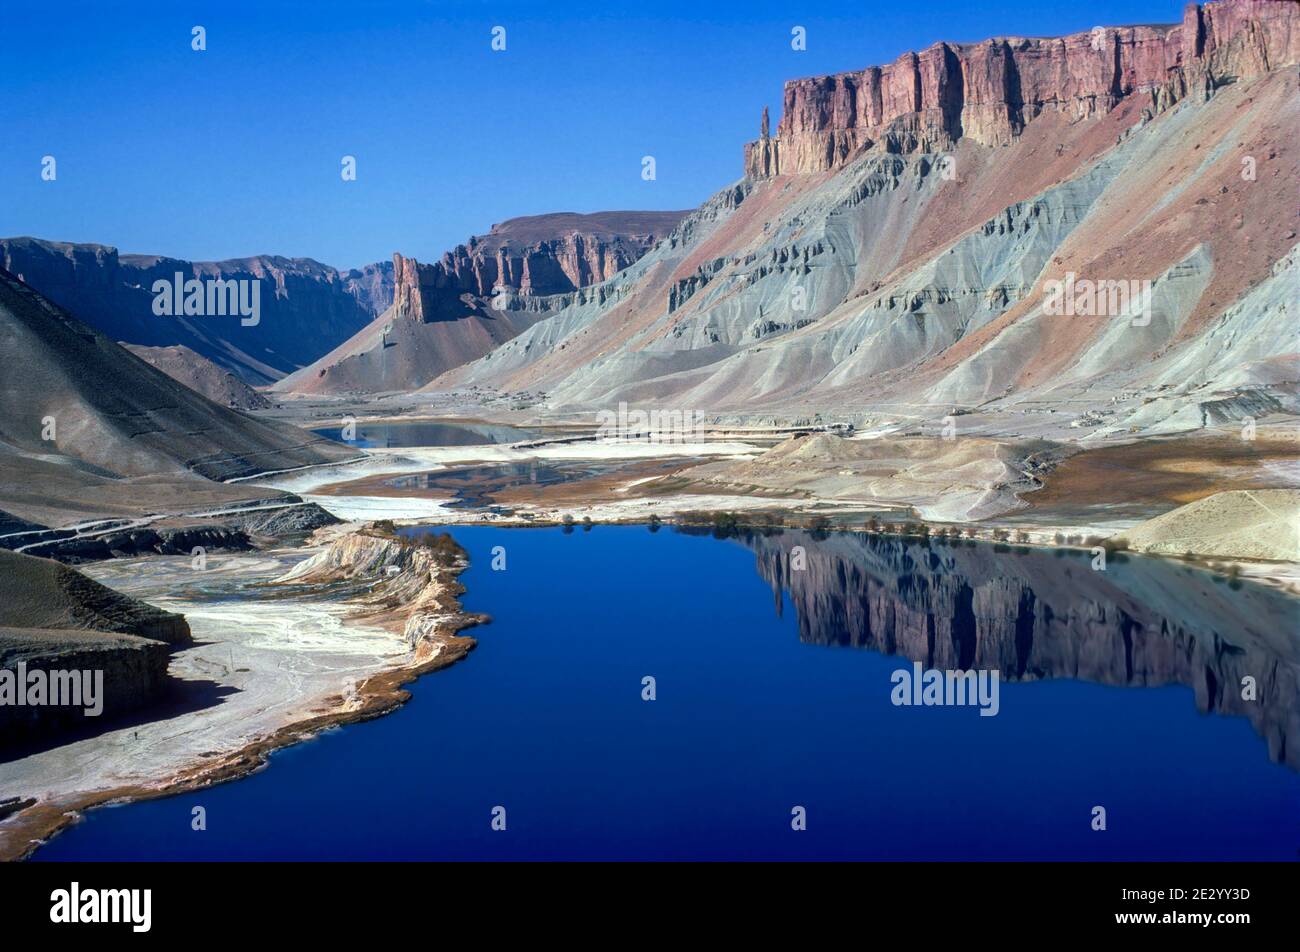 Bande e Amir naturellement formé lac province de Bamyan Centre de l'Afghanistan Banque D'Images